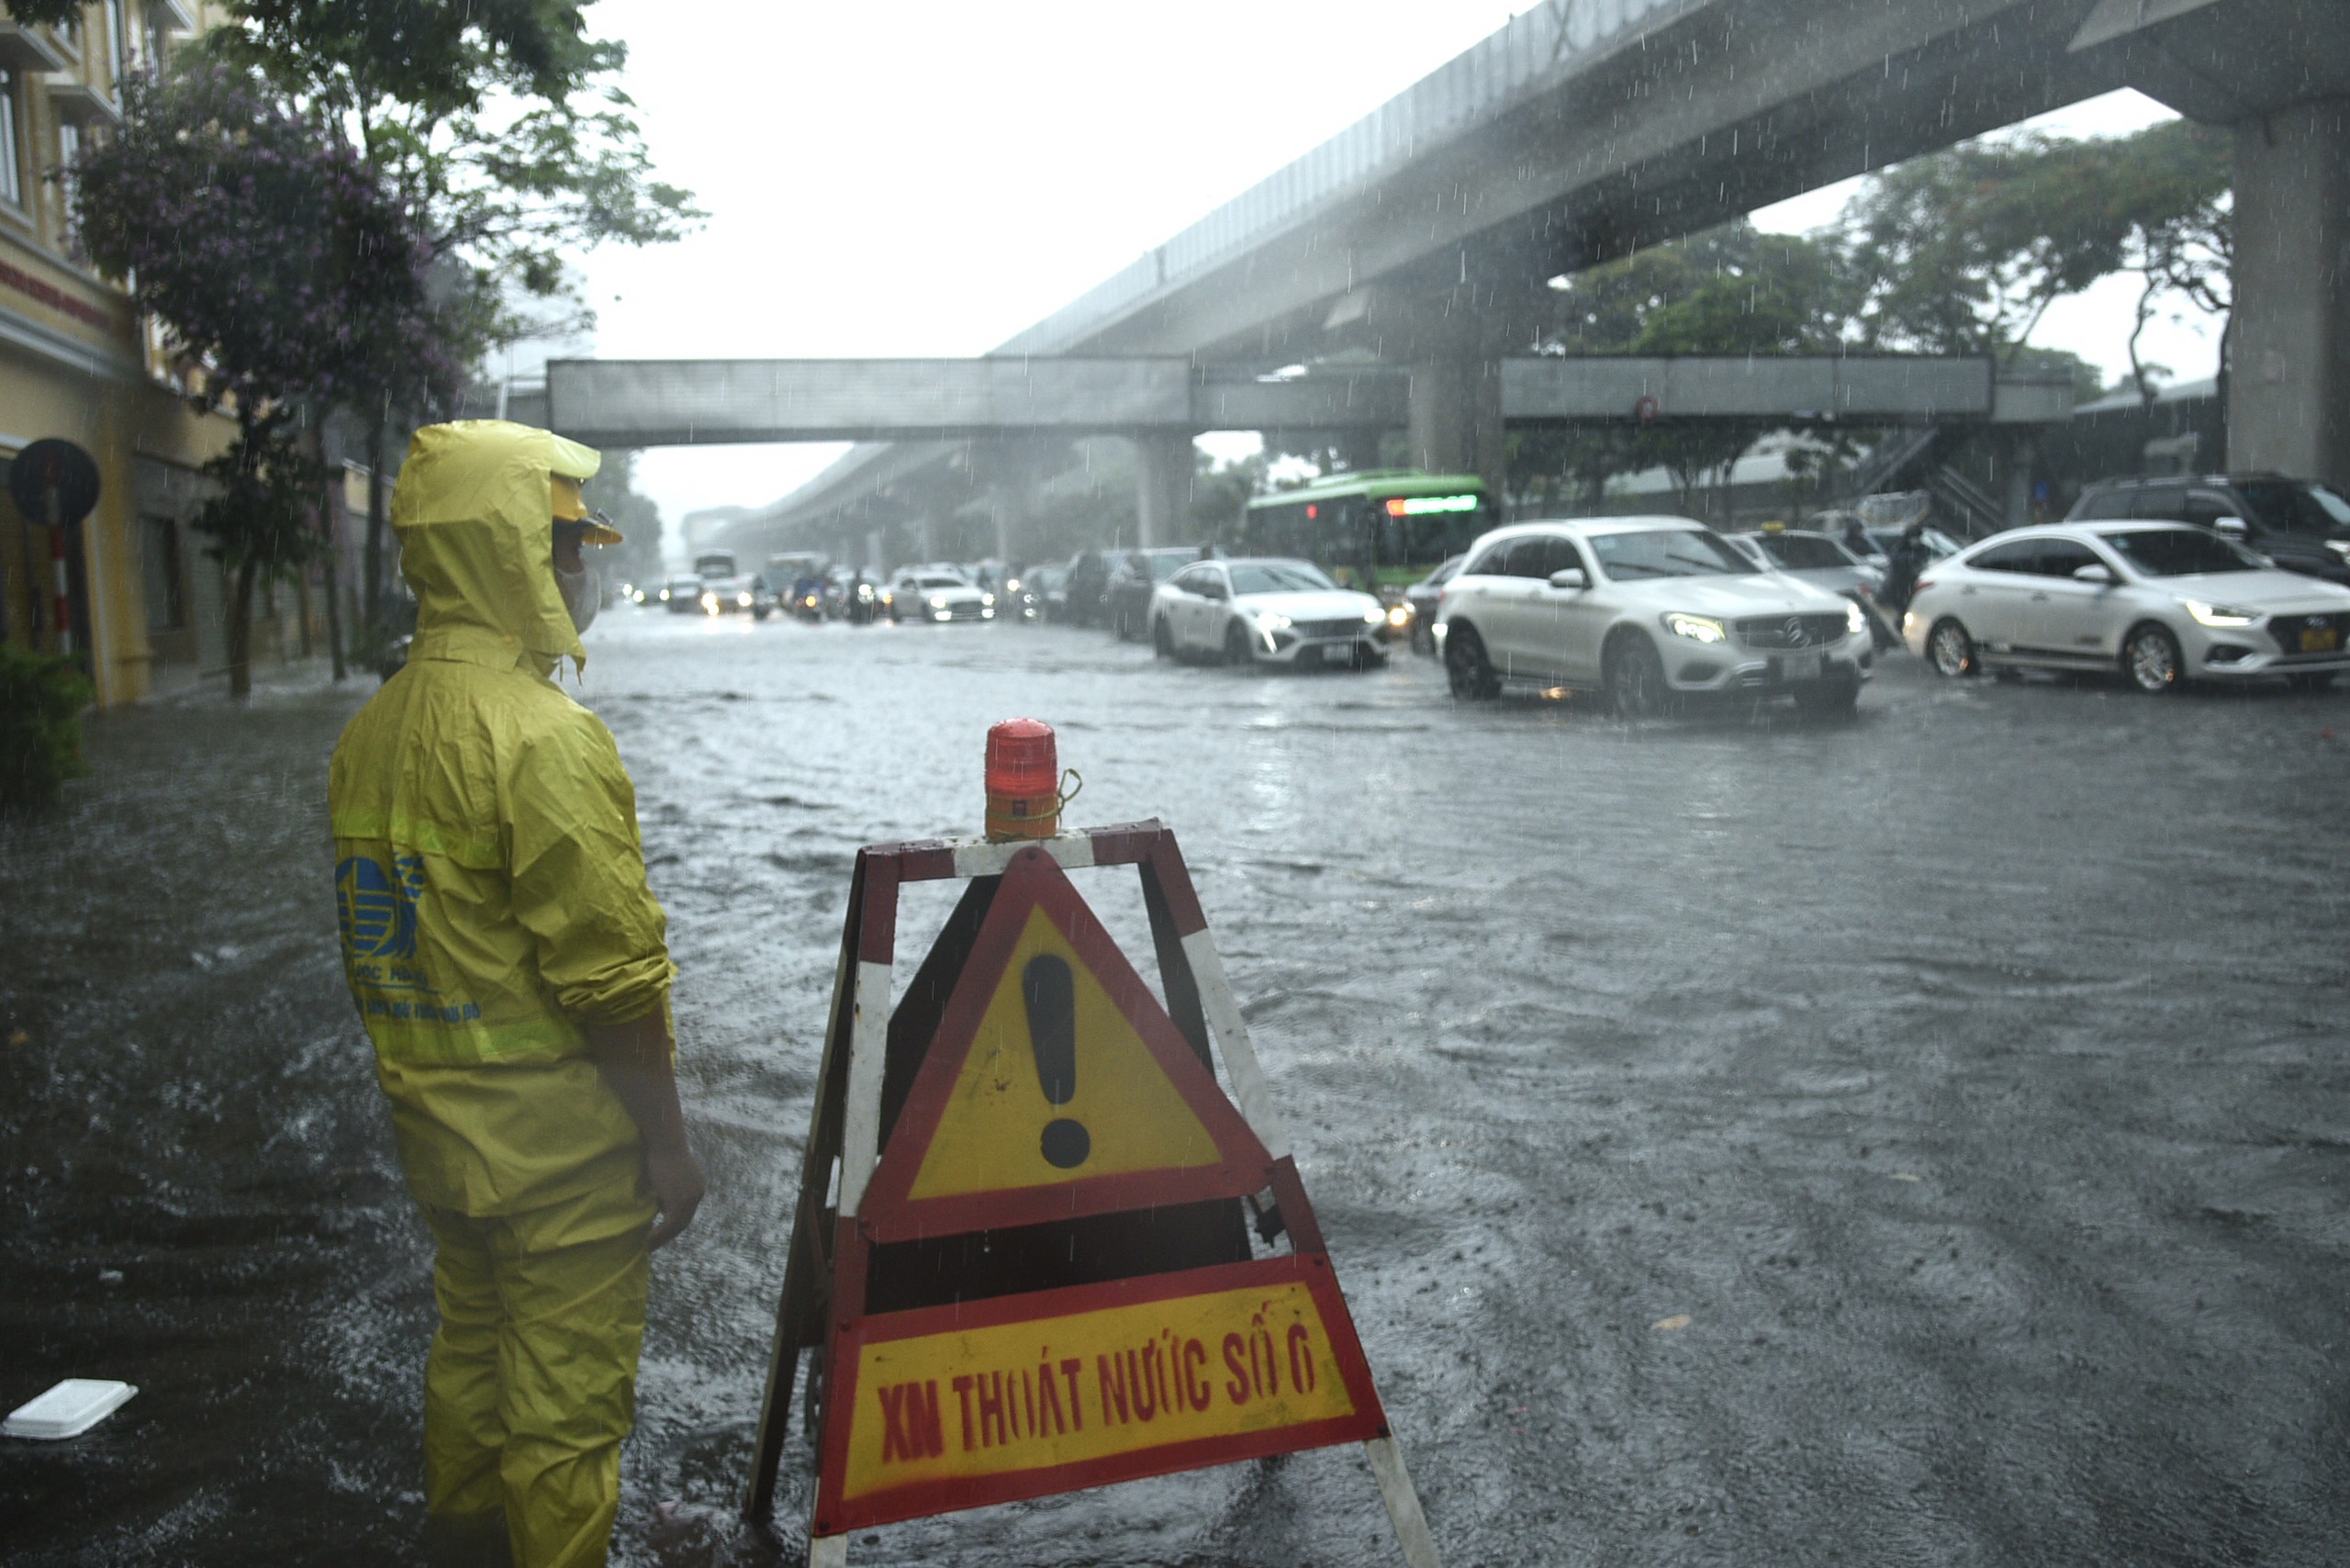 Ngập úng sau mưa lớn, người dân Thủ đô vật vã trên đường đi làm- Ảnh 2.